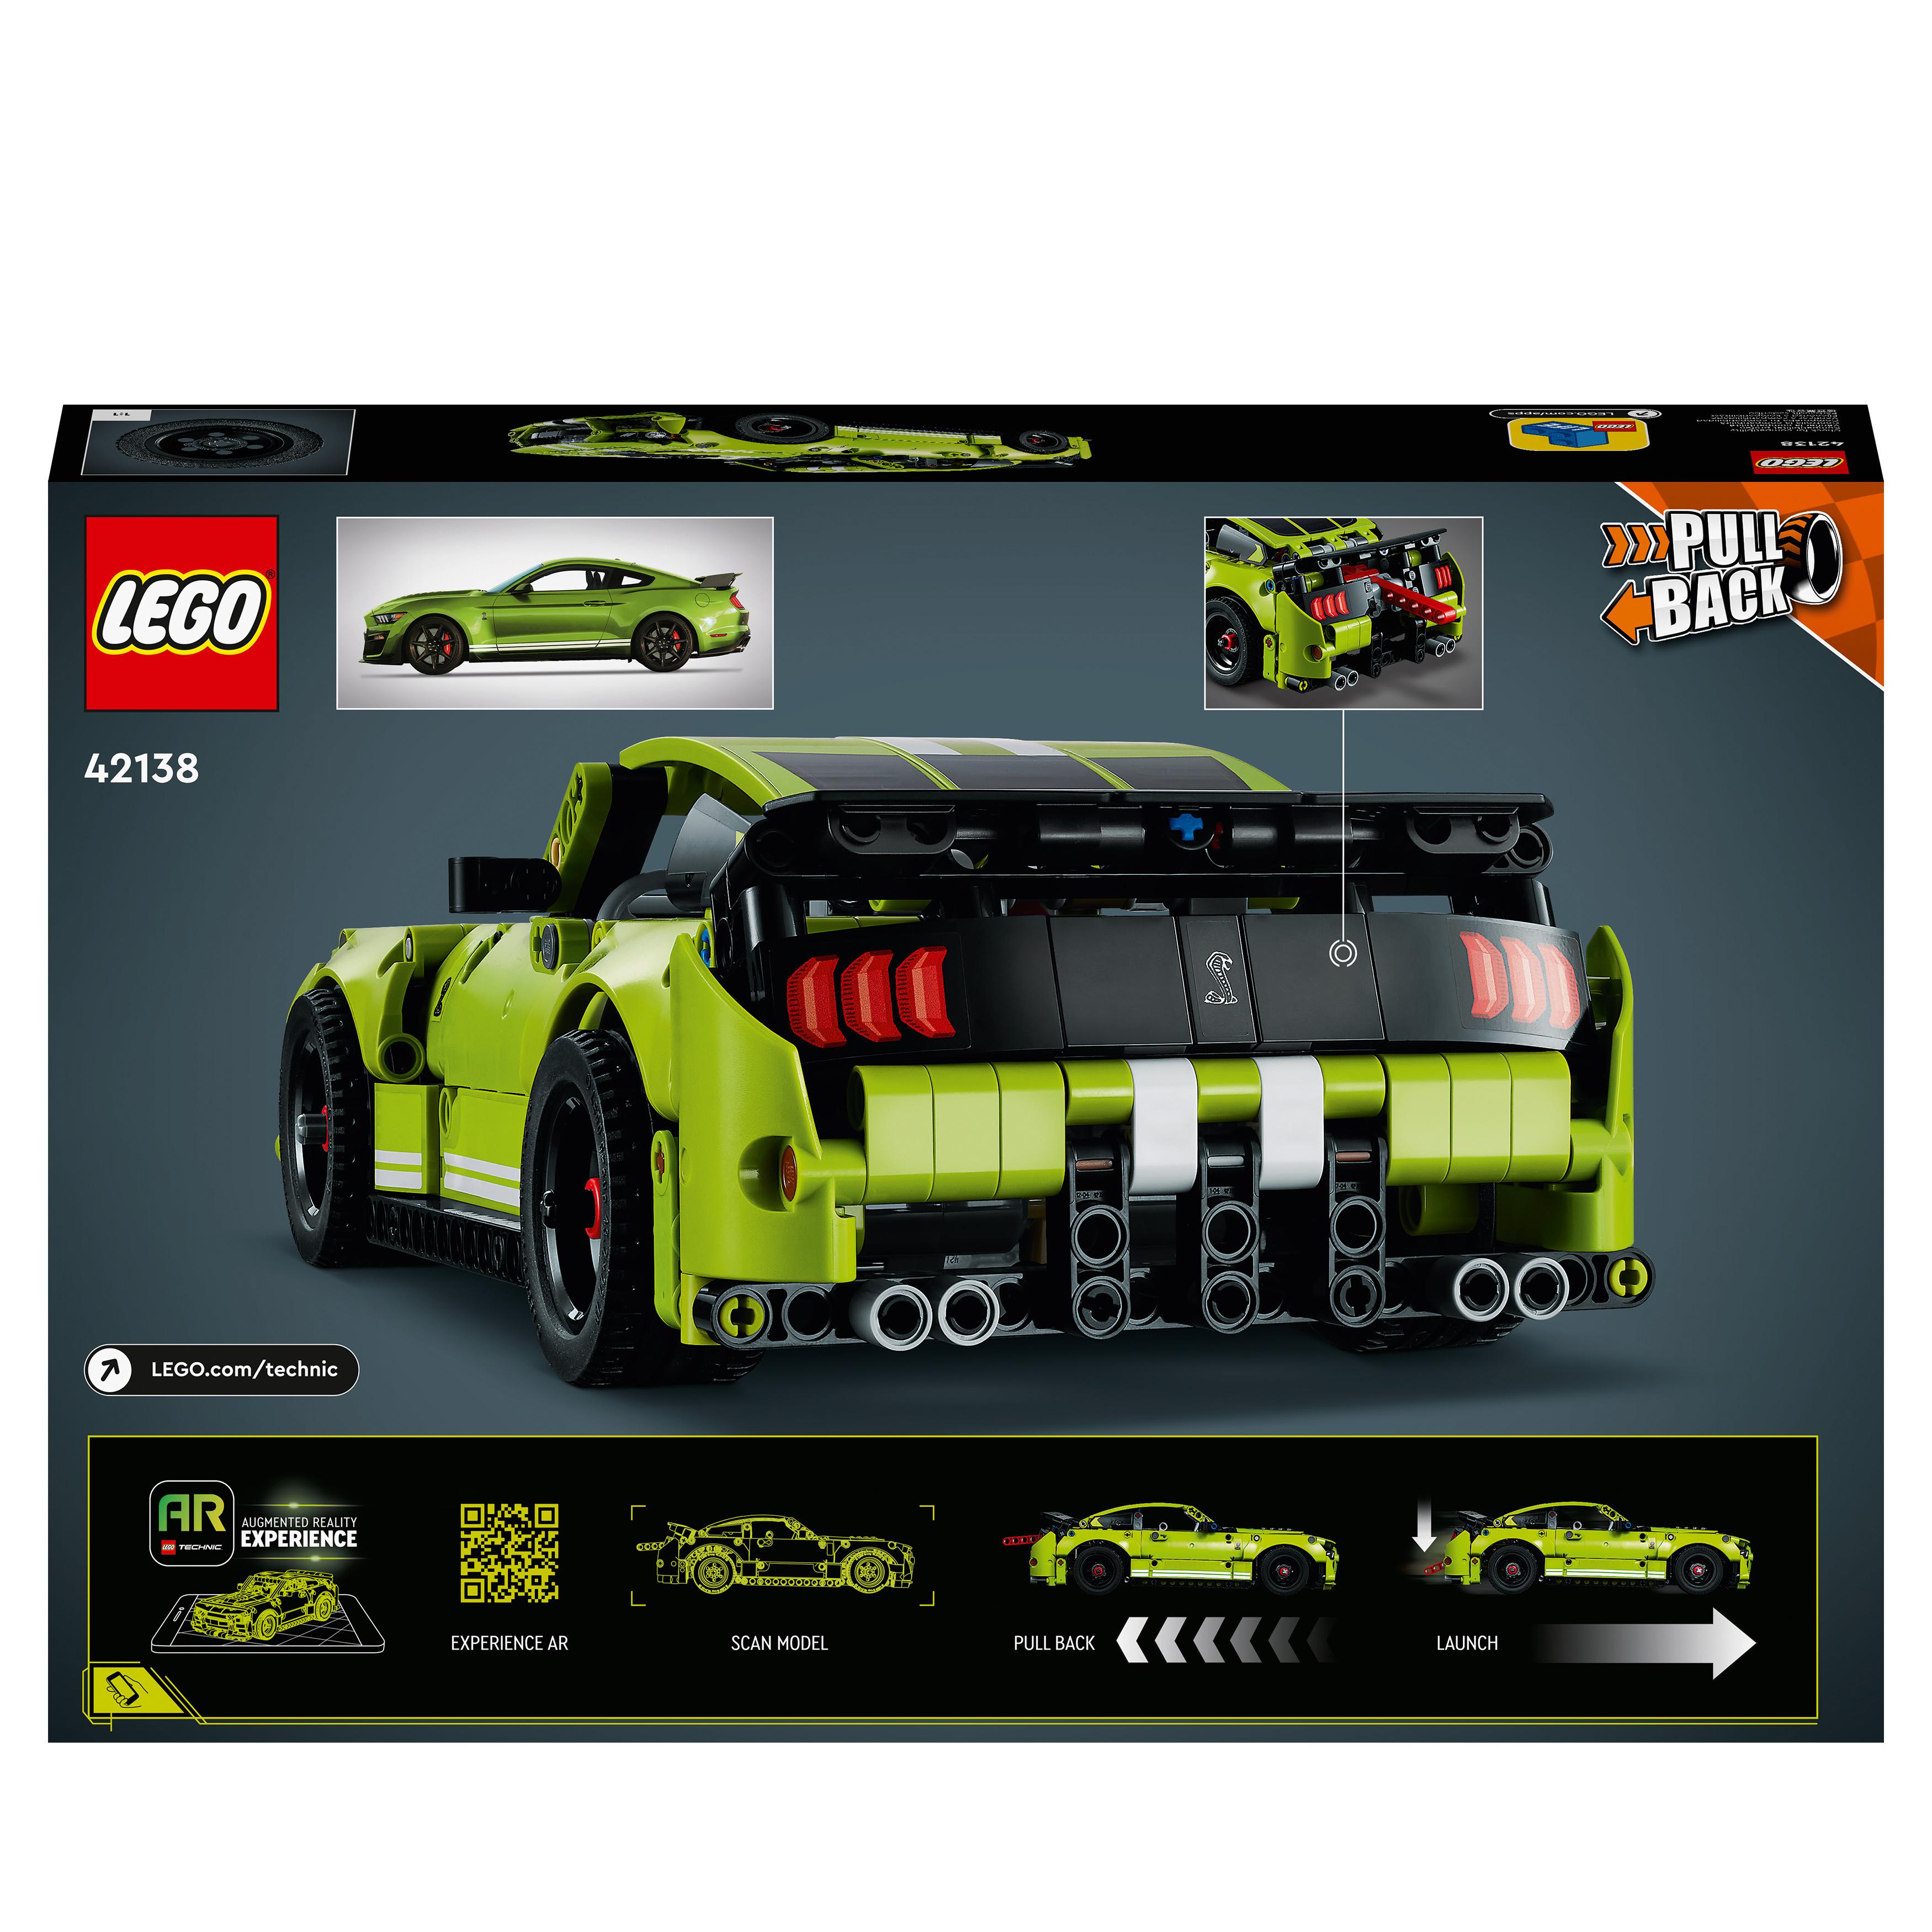 LEGO Technic Ford Mustang Shelby GT500, Modellino Auto da Costruire, Macchina Gi 42138, , large